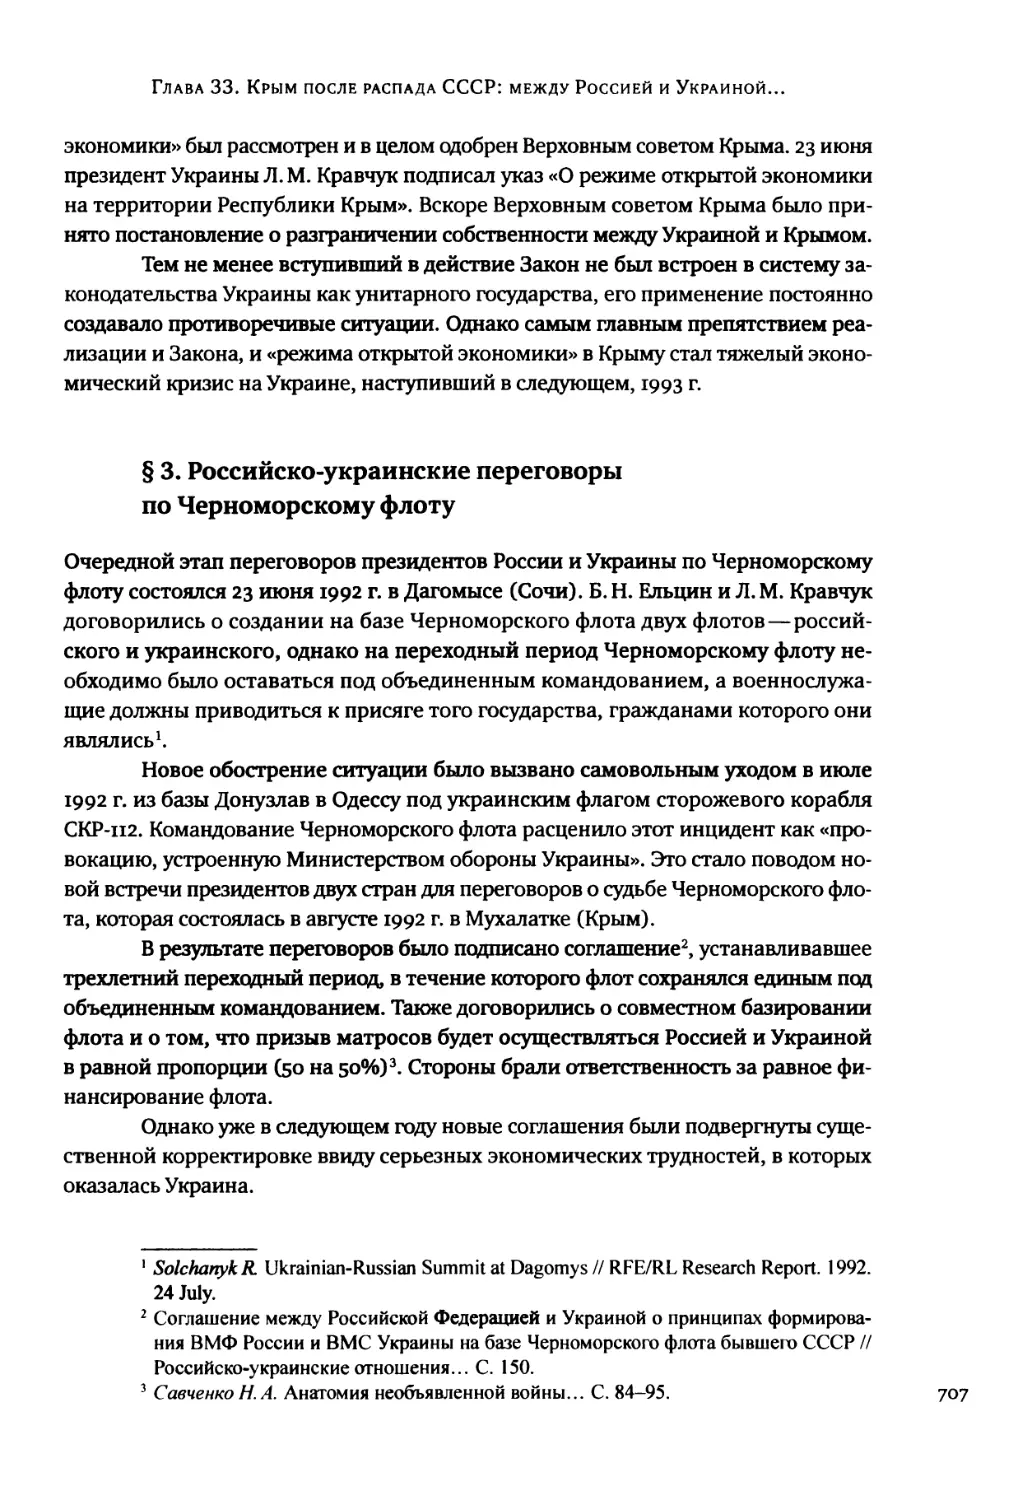 § 3. Российско-украинские переговоры по Черноморскому флоту